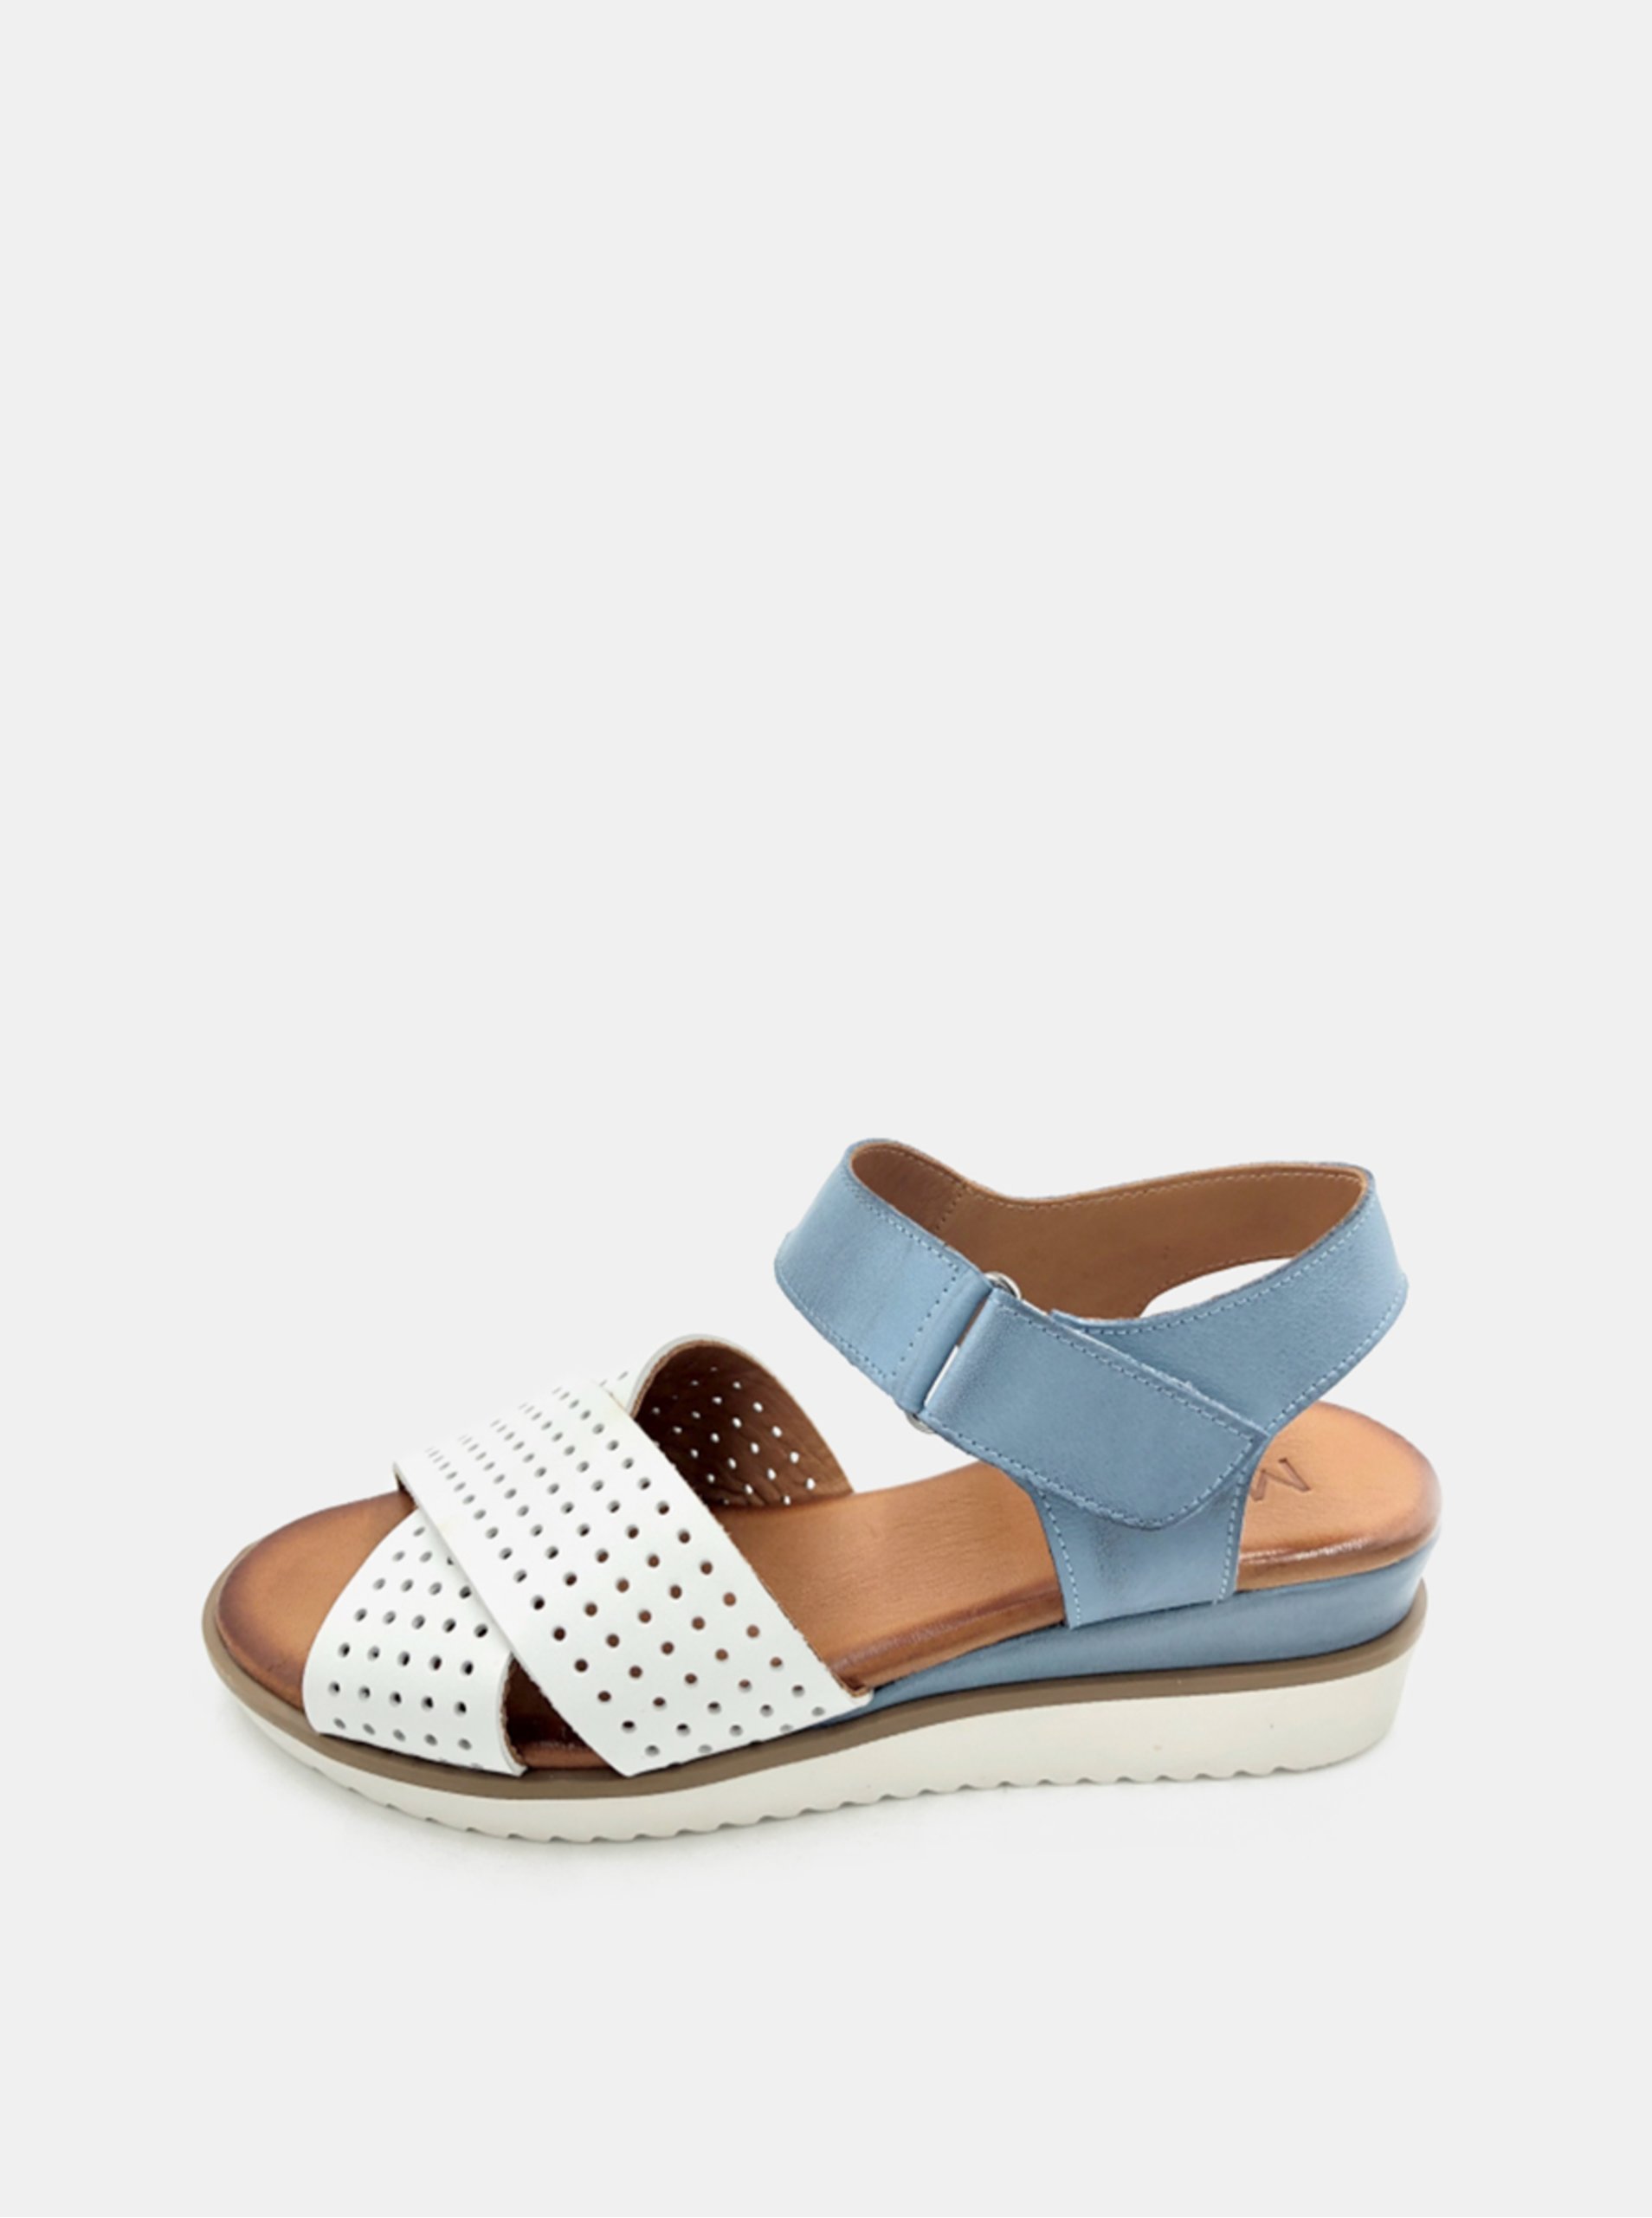 Lacno Bielo-modré dámske kožené sandálky na plnom podpätku WILD